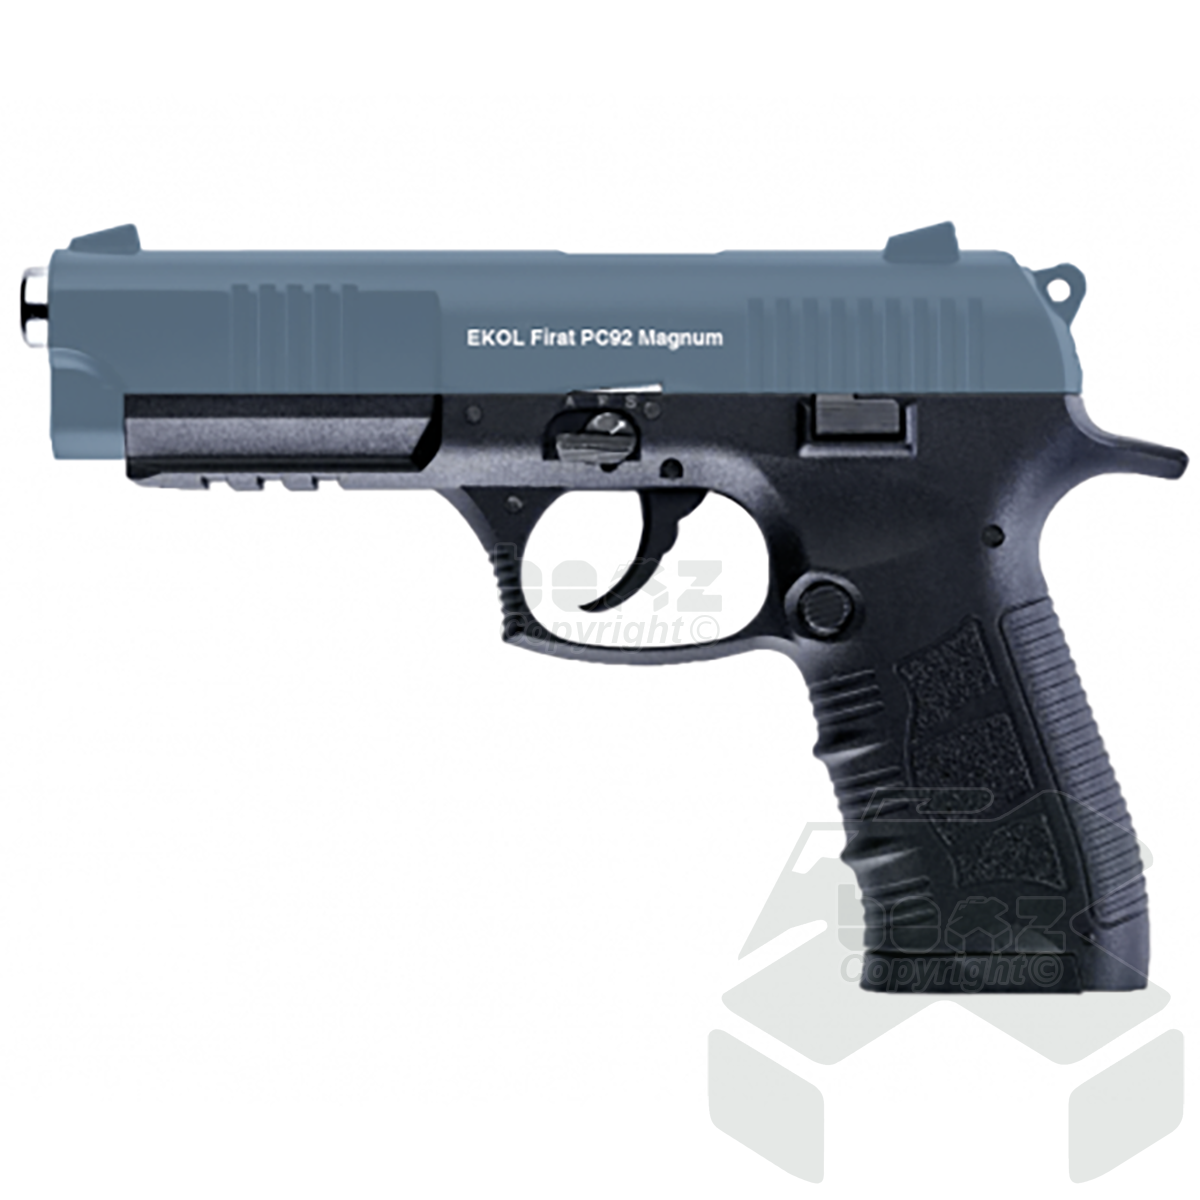 Ekol Firat PC92 Magnum Blank Firing Pistol - 9mm